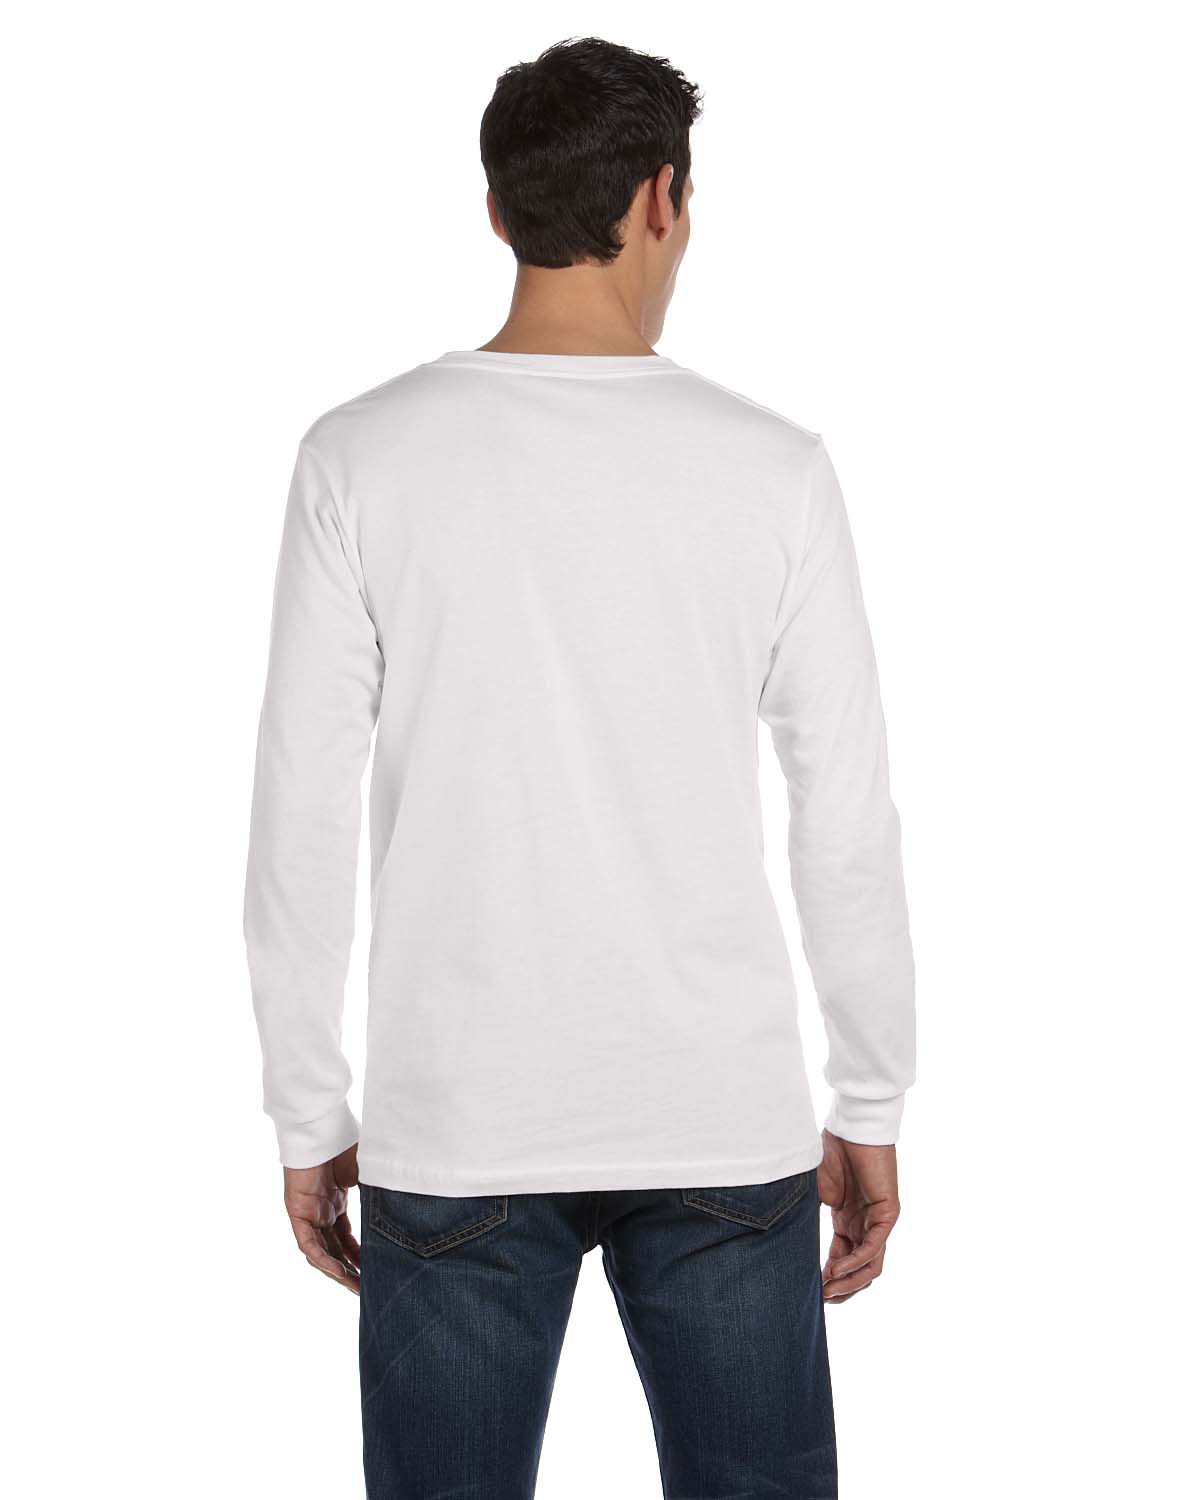 NEW Bella + Canvas Men's Jersey Long-Sleeve S-2XL T-Shirt M-3501 | eBay